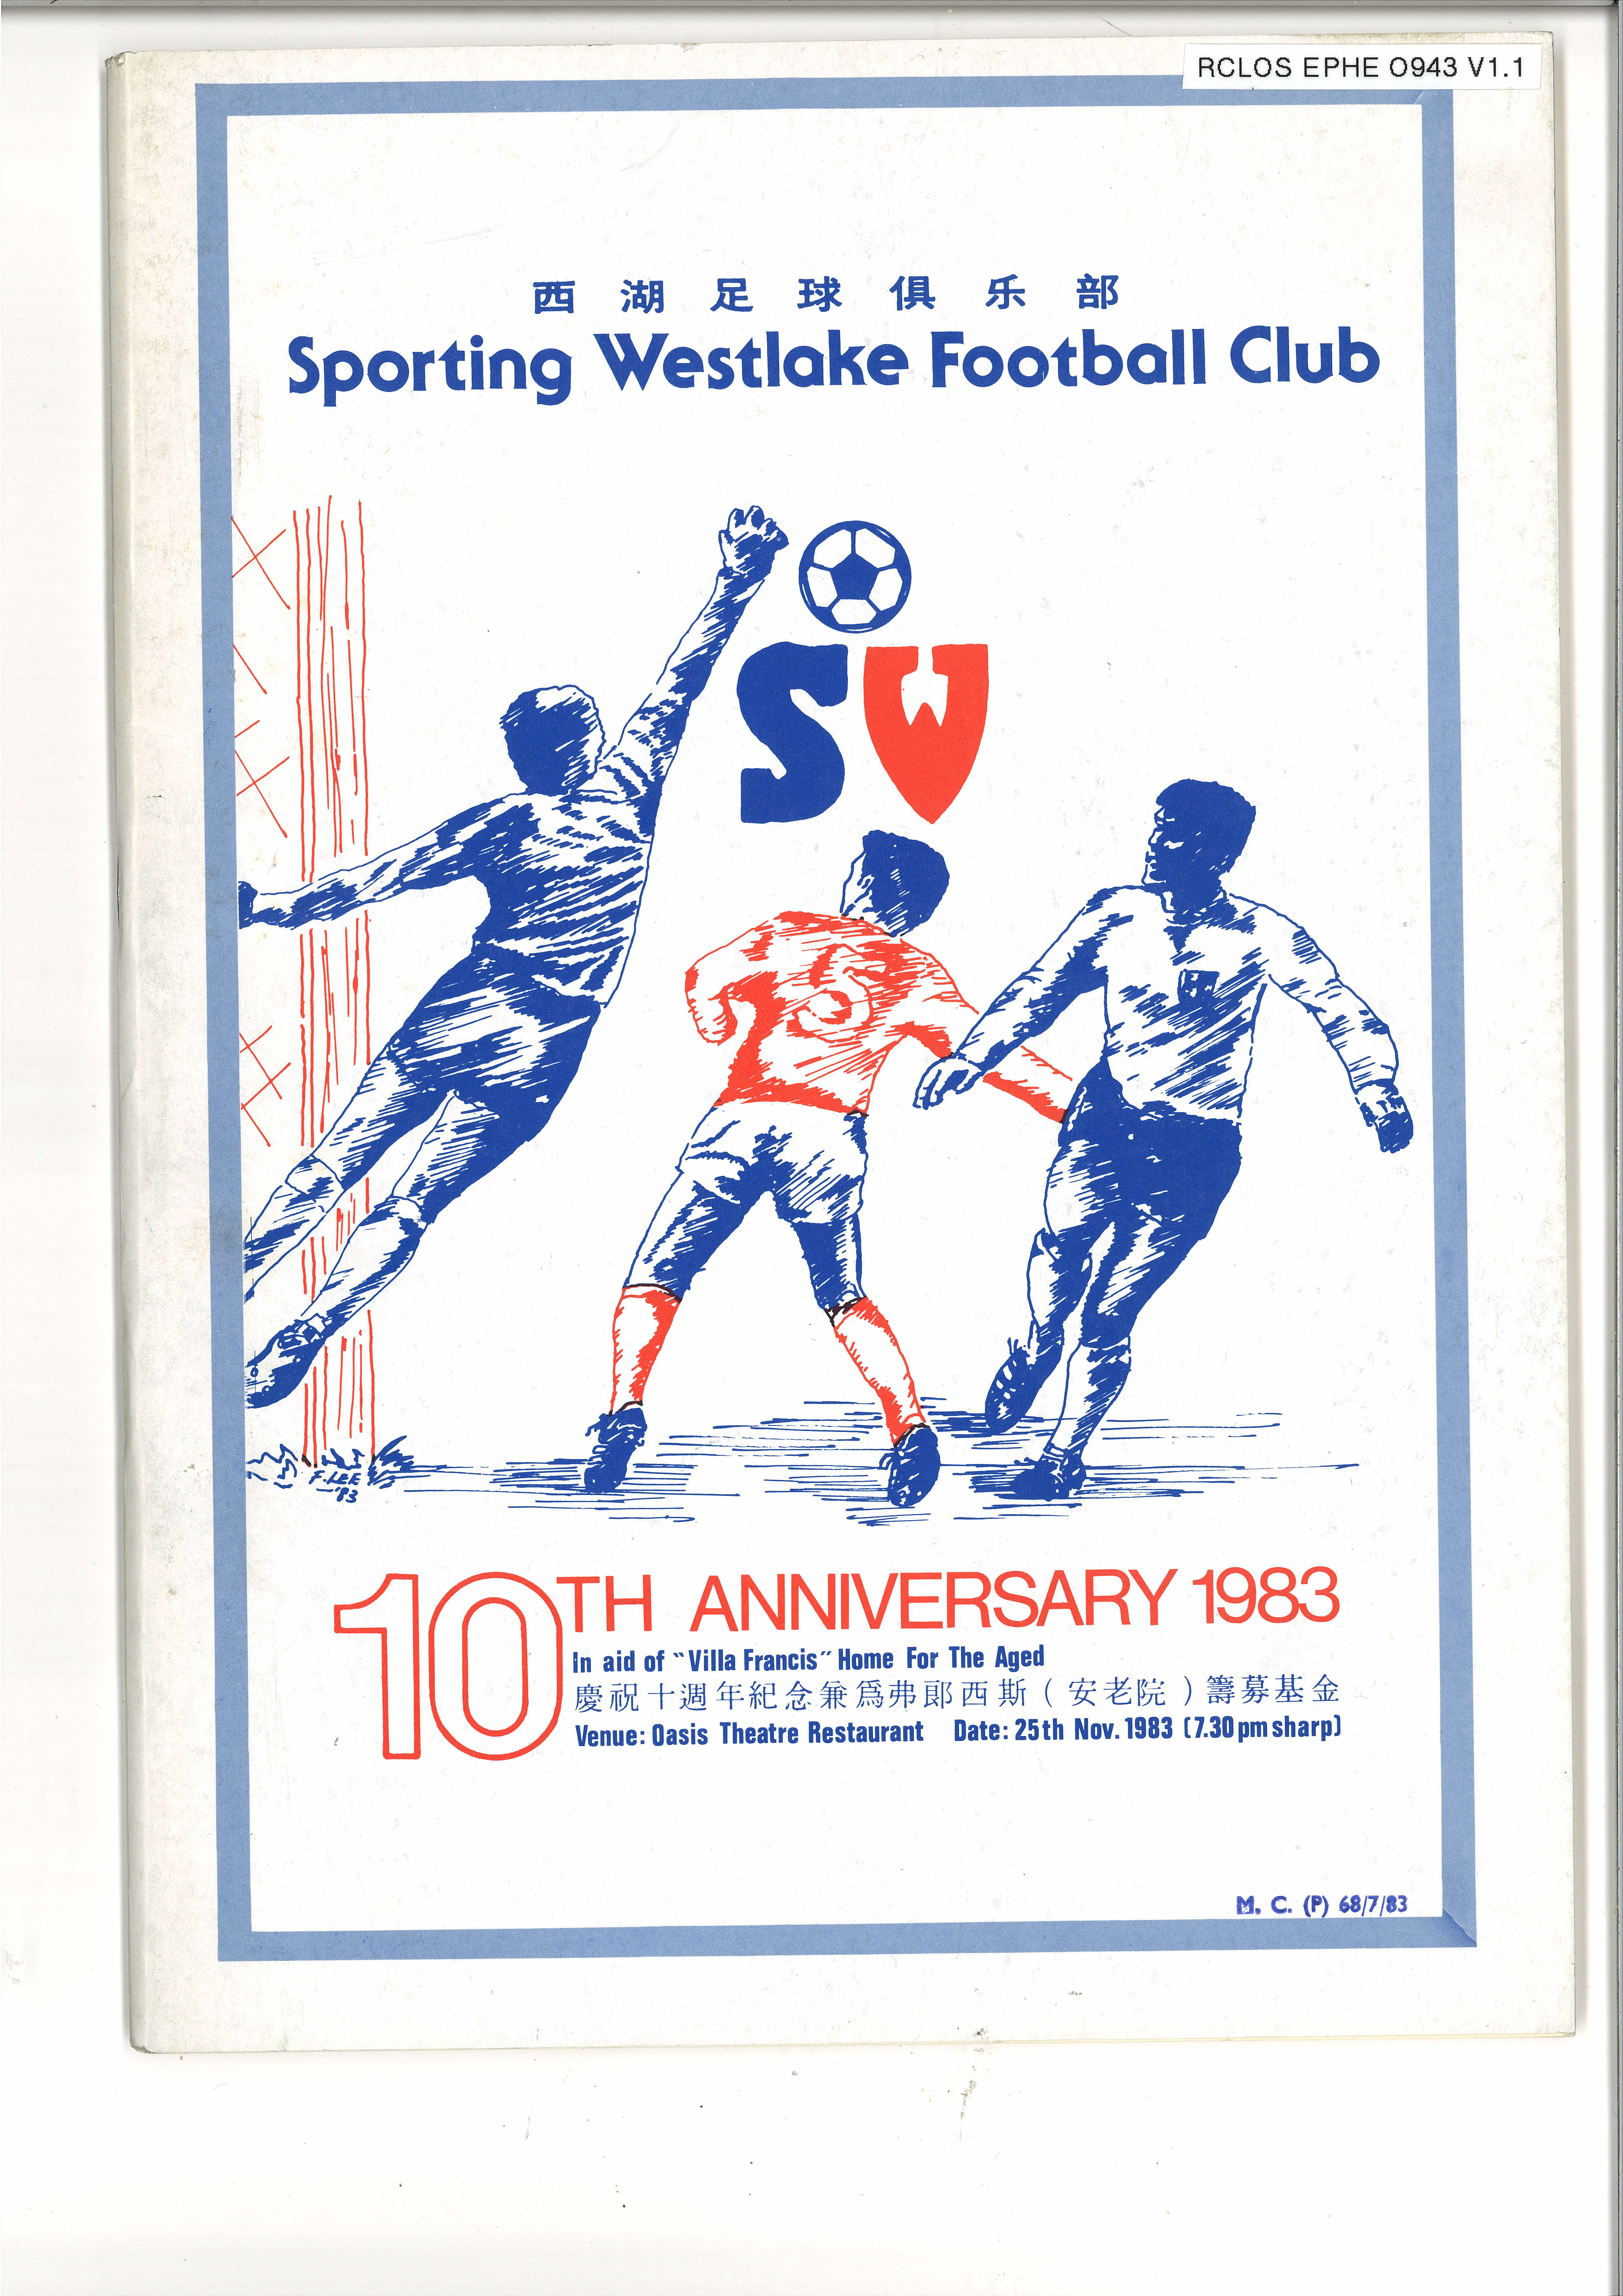 Sporting Westlake Football Club: 10th Anniversary